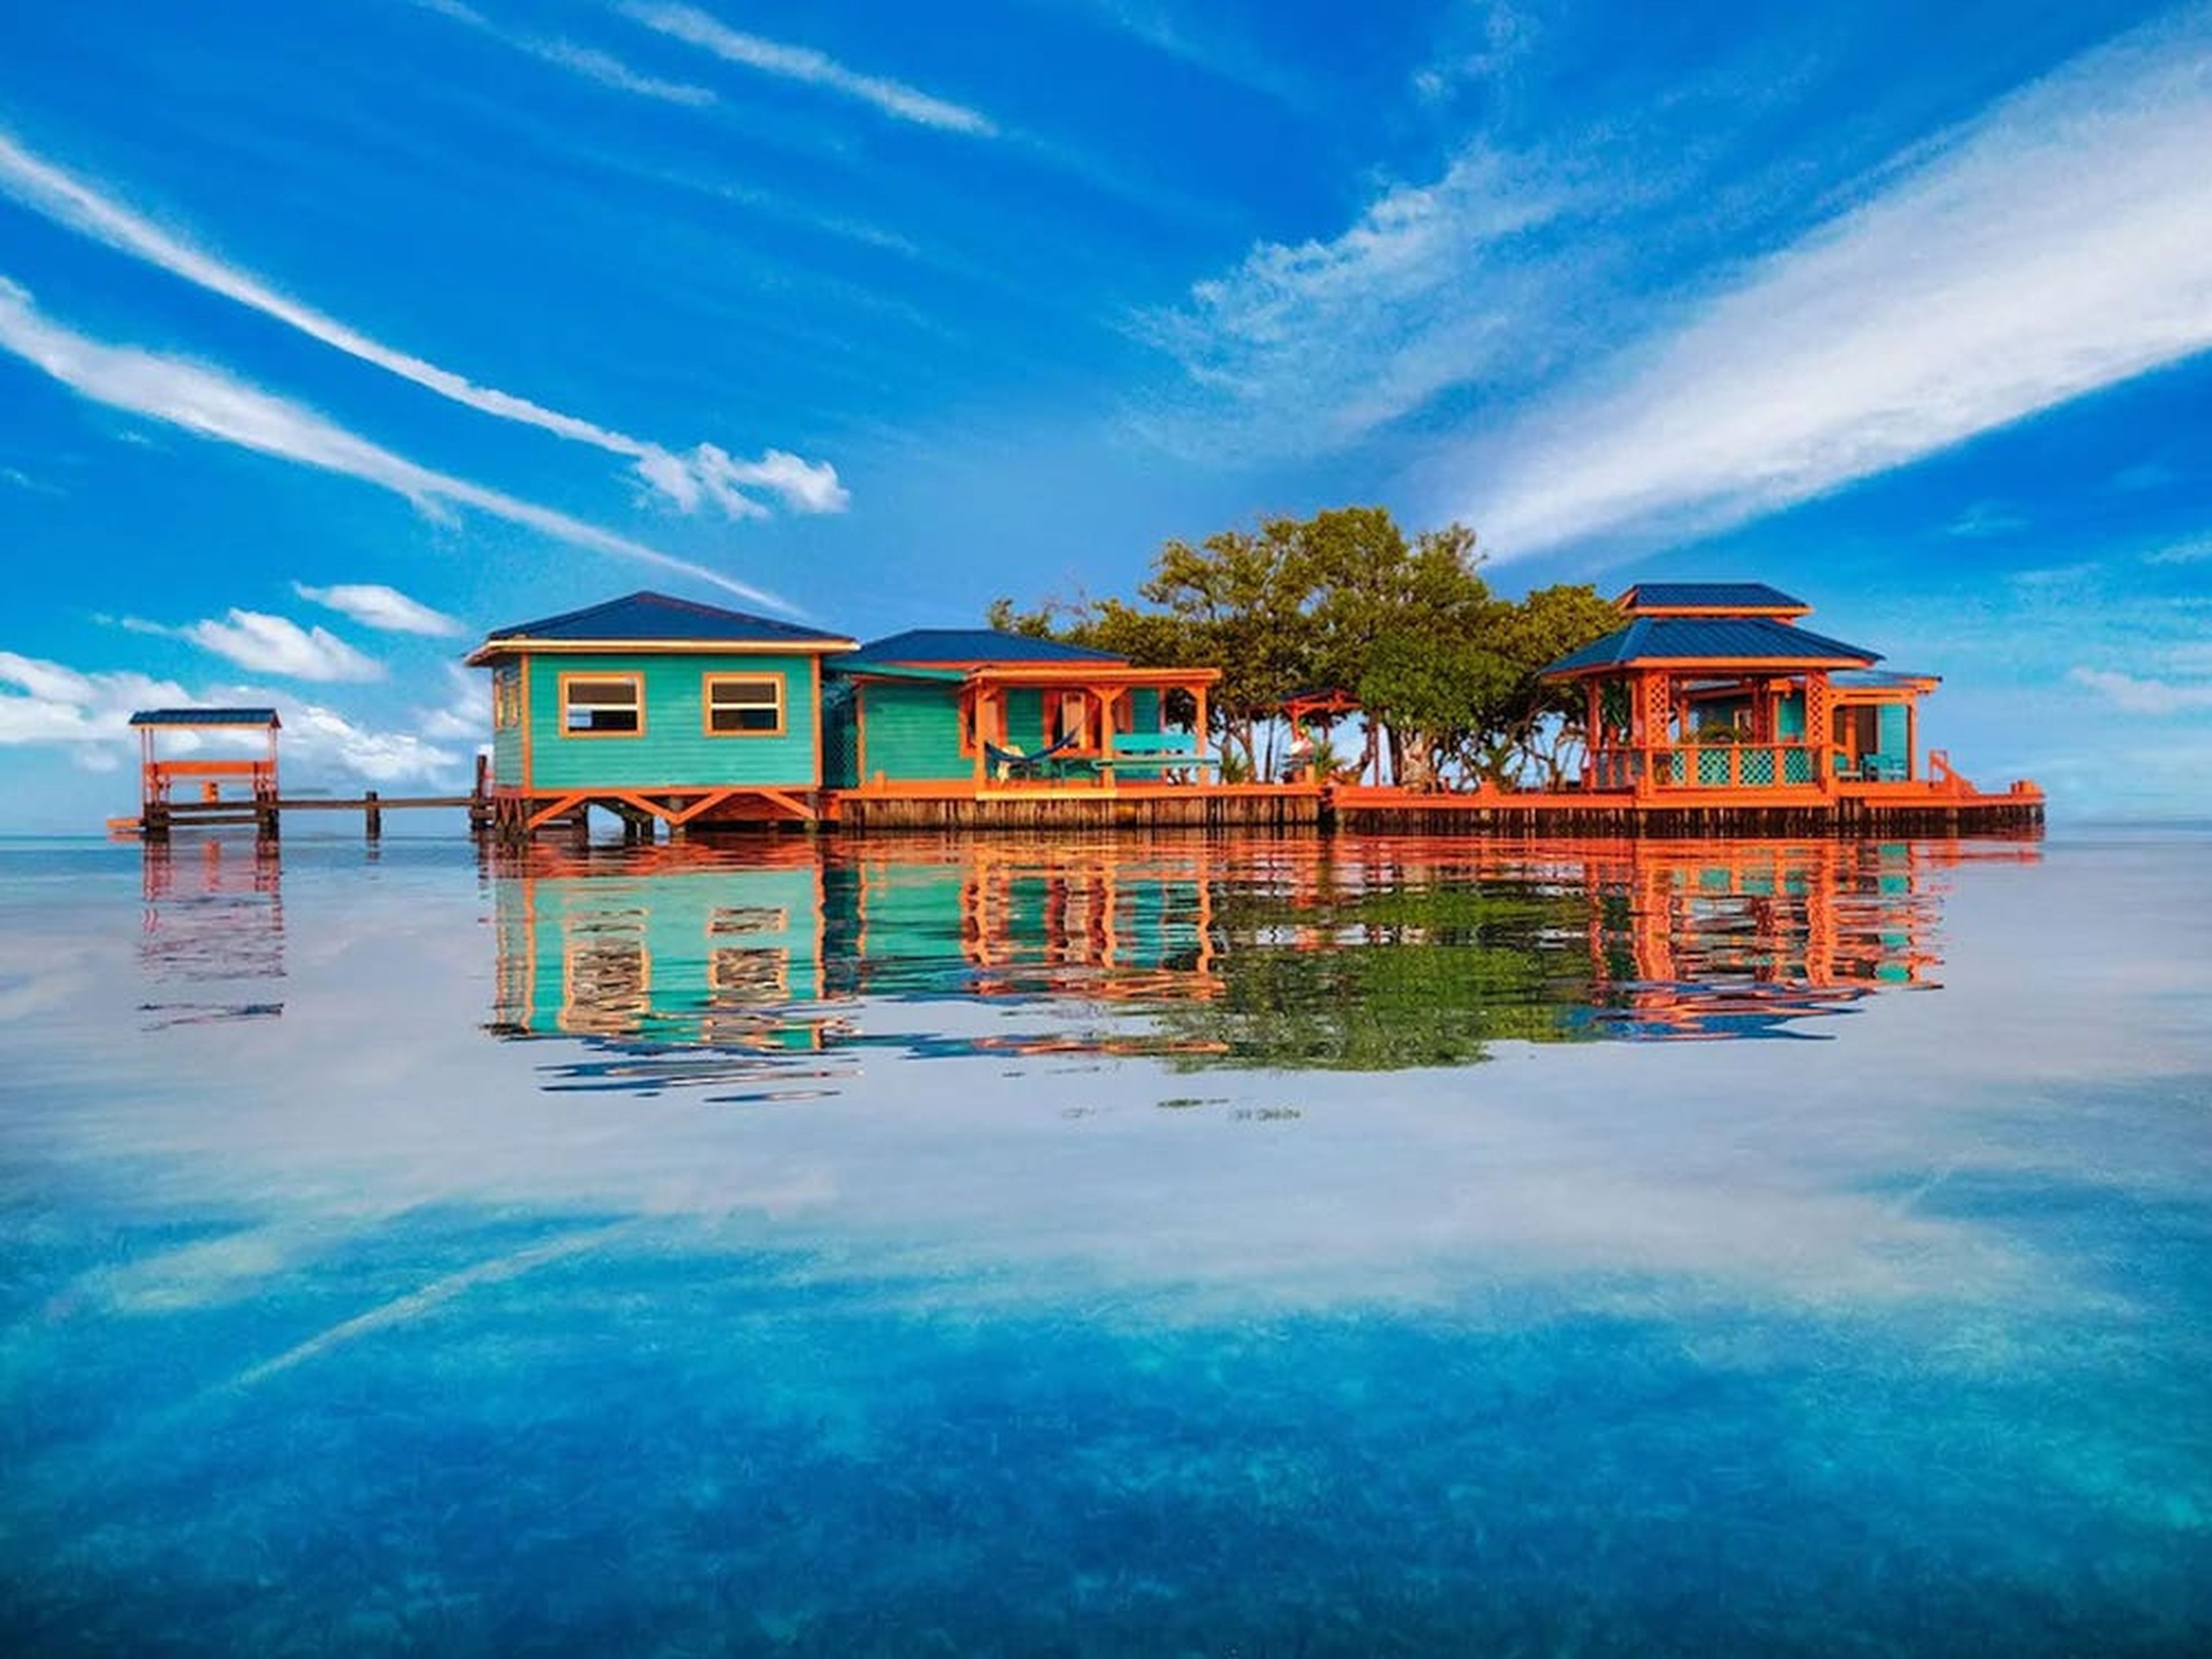 Isla privada anunciada en Airbnb